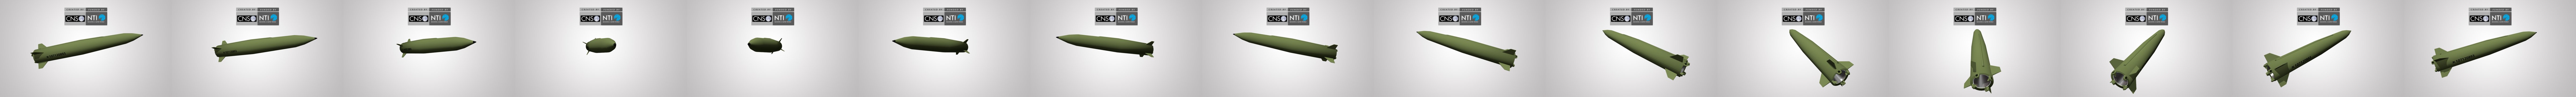 баллистическая ракета, Корея, Россия, Украина, KN-23, Искандер, Гром-2 